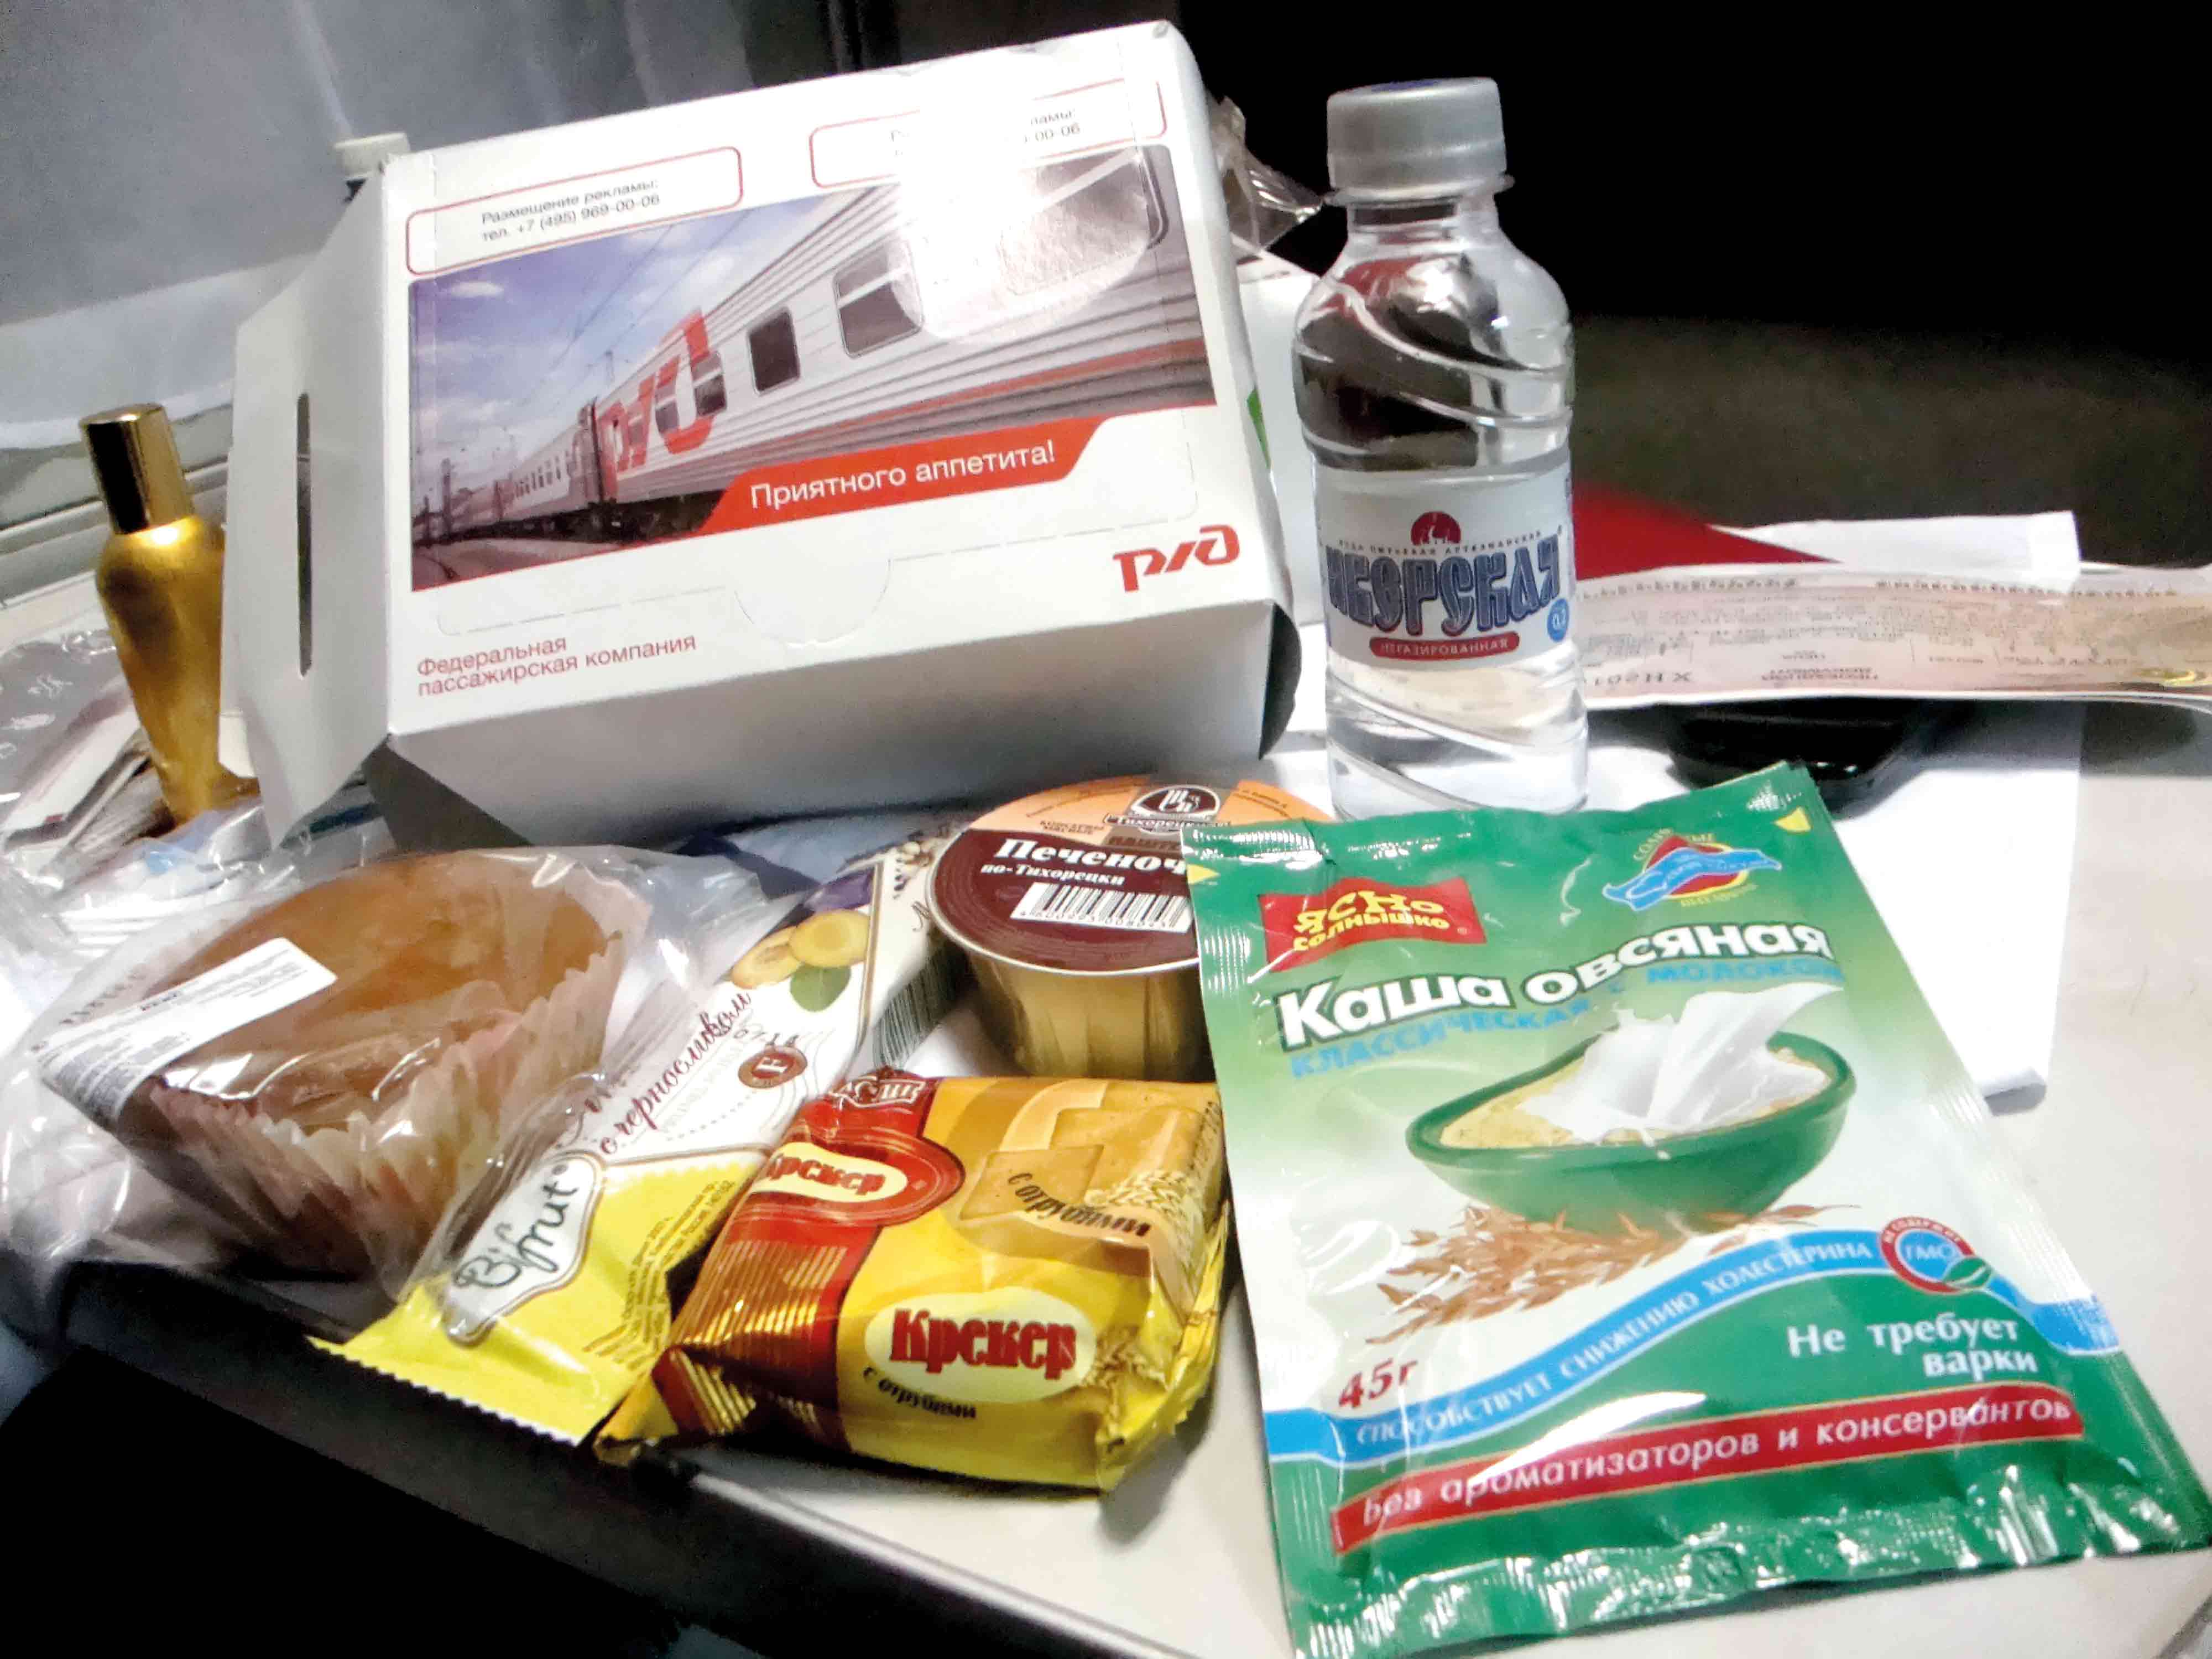 Основное питание входит в билет. Наборы питания в поезде. Набор еды РЖД. Набор питания в поезде РЖД. Набор еды в поезде РЖД.